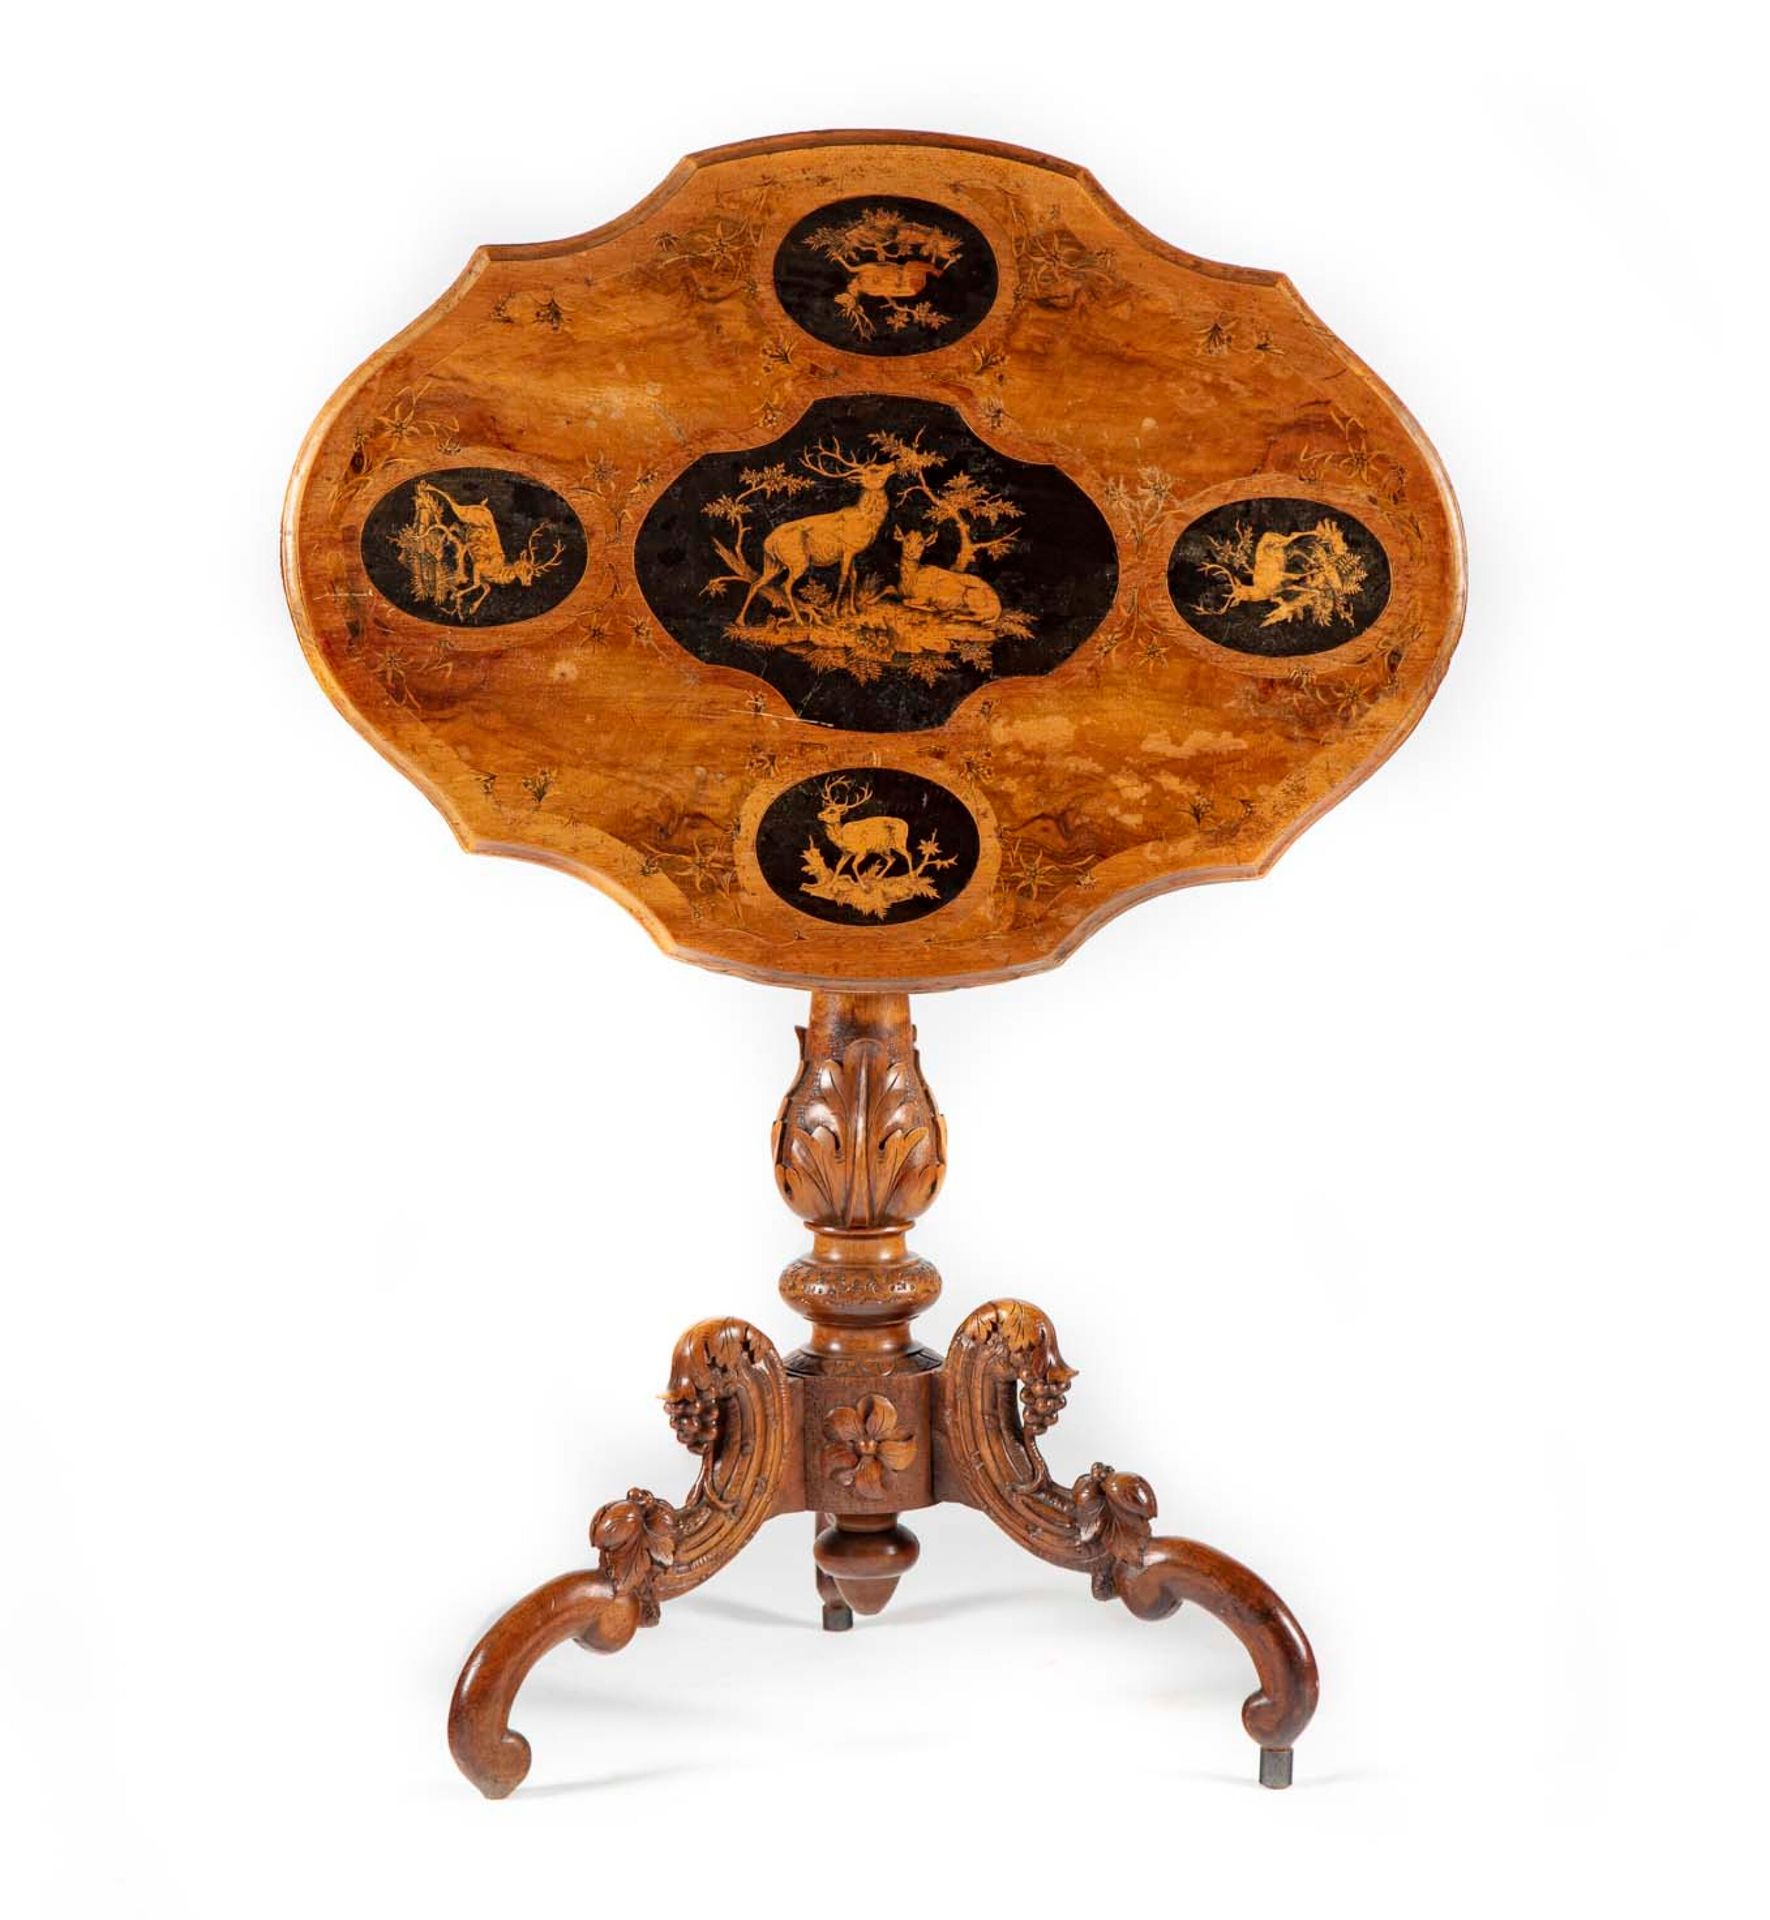 Null 小提琴基座桌，中央有一个雕刻和模制的三脚架轴，顶部装饰有鹿和鹿的镶嵌图案

东方工作

19世纪